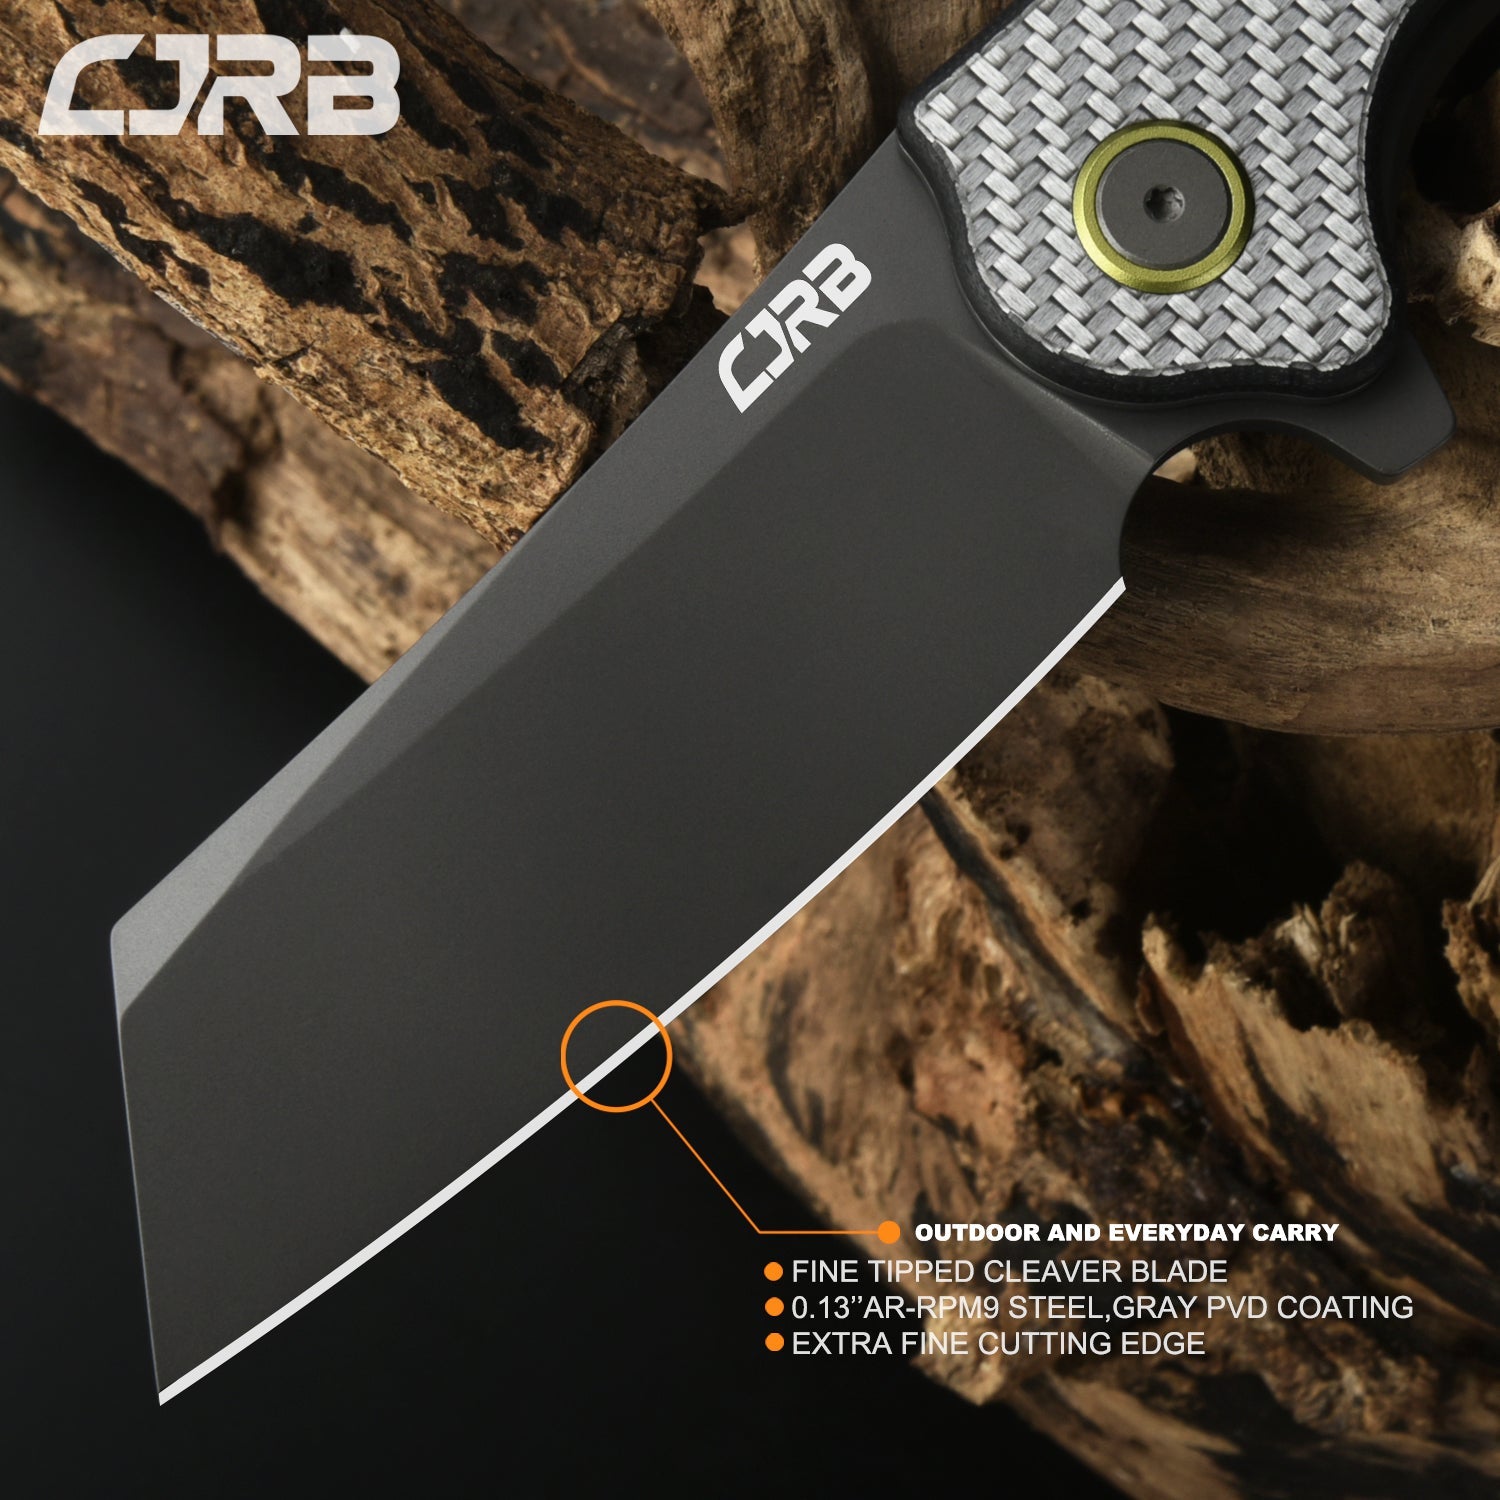 CJRB Crag J1904 AR-RPM9 Steel Gray Pvd Blade Sliver Carbon Fiber Handle Folding Knives